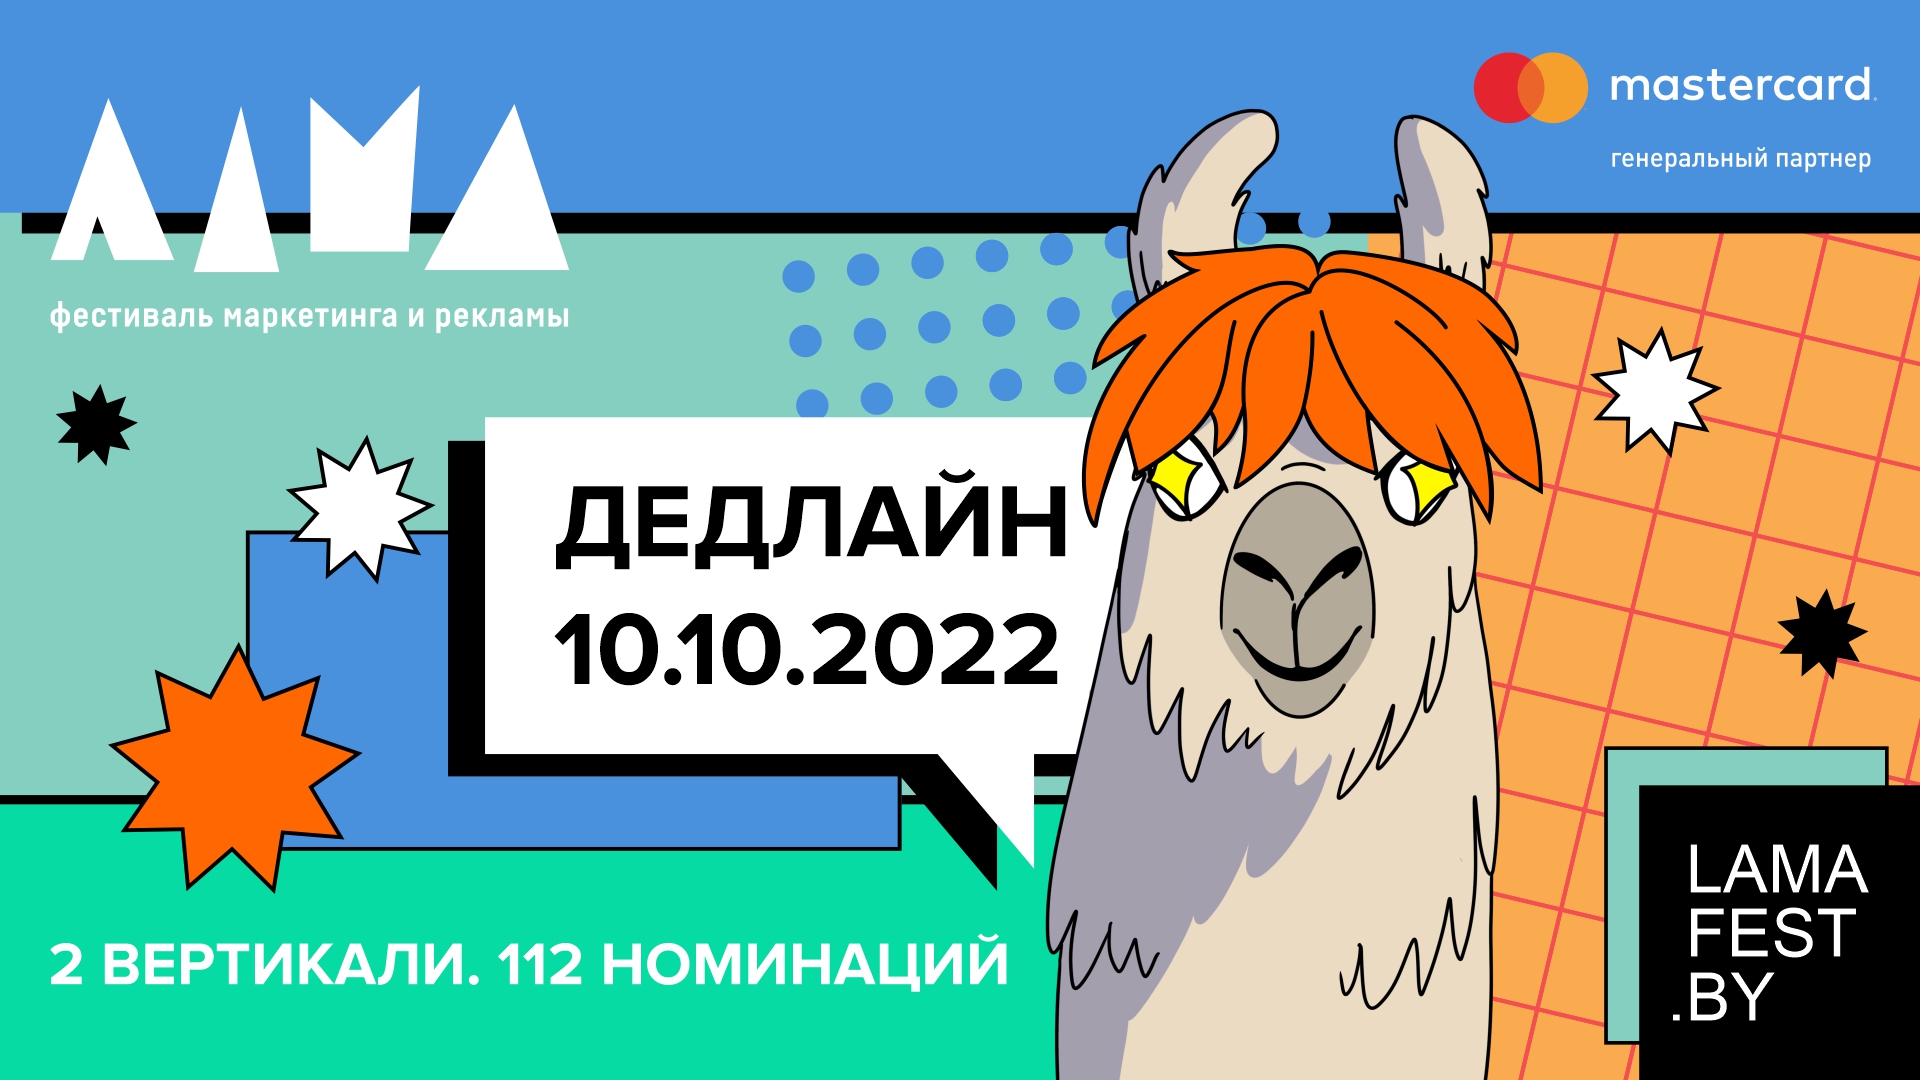 Подать работы на Фестиваль маркетинга и рекламы ЛАМА 2022 можно до 10 октября